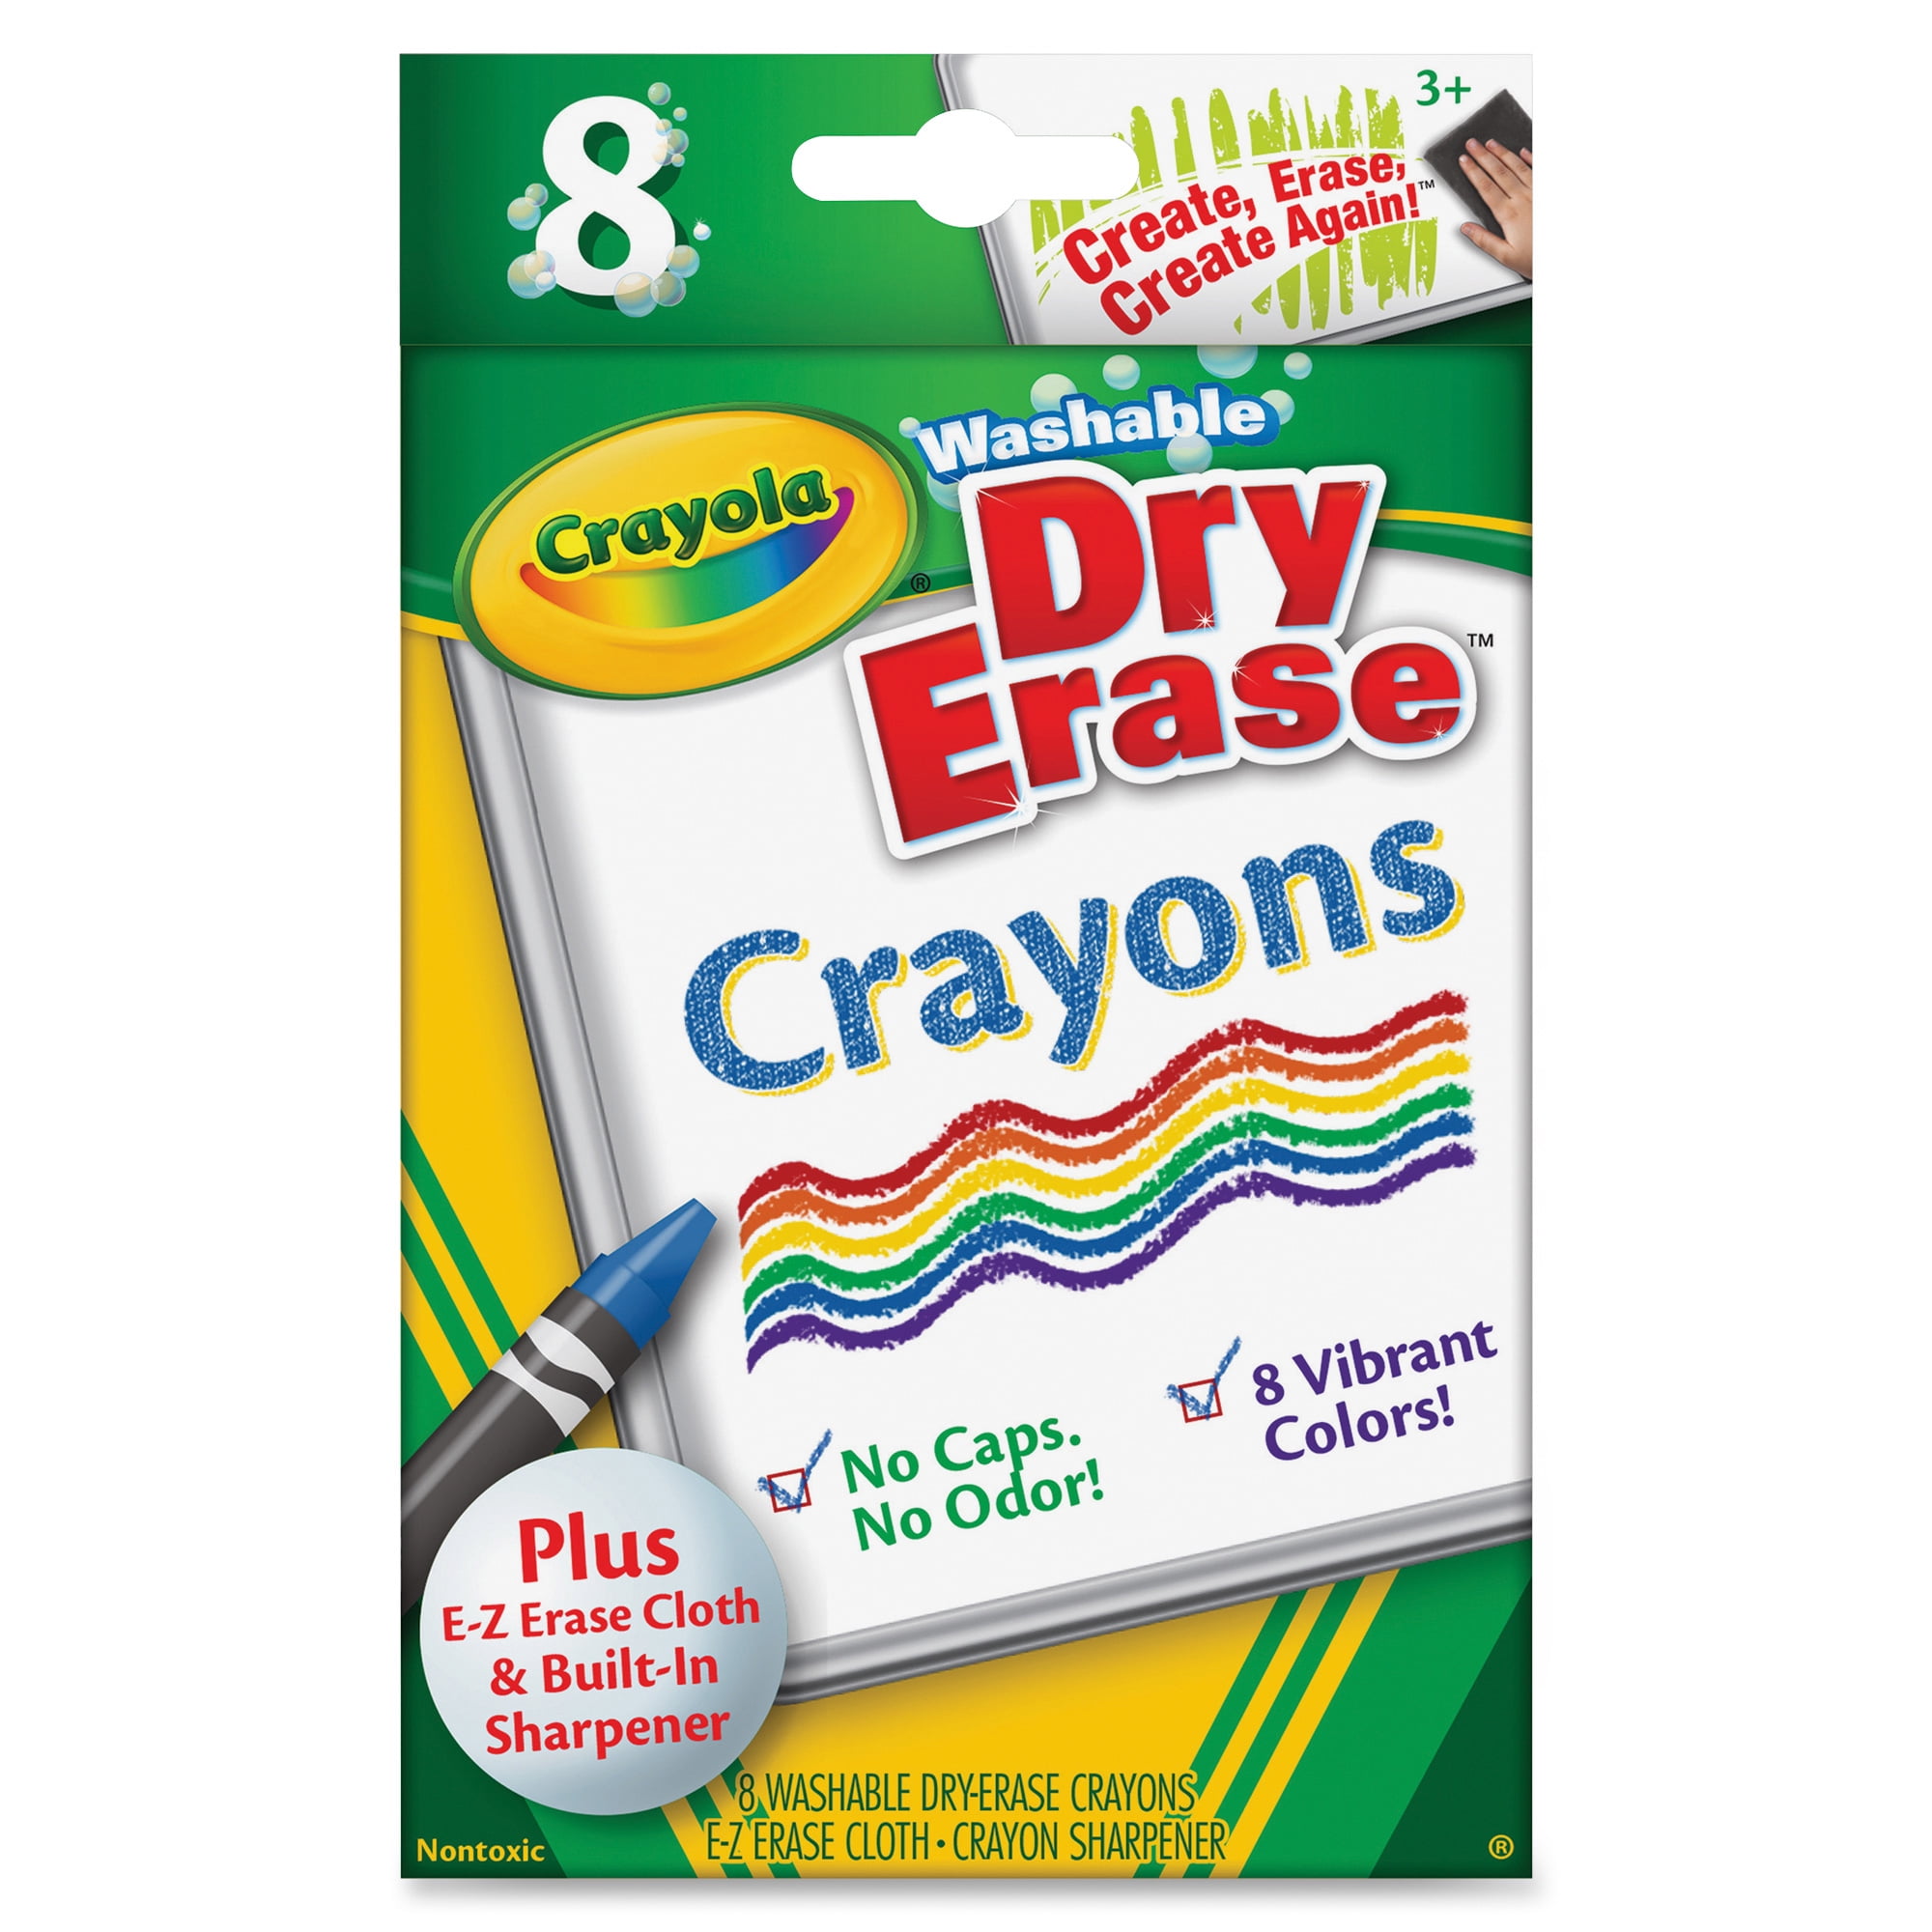 Crayola Washable Dry Erase Marker